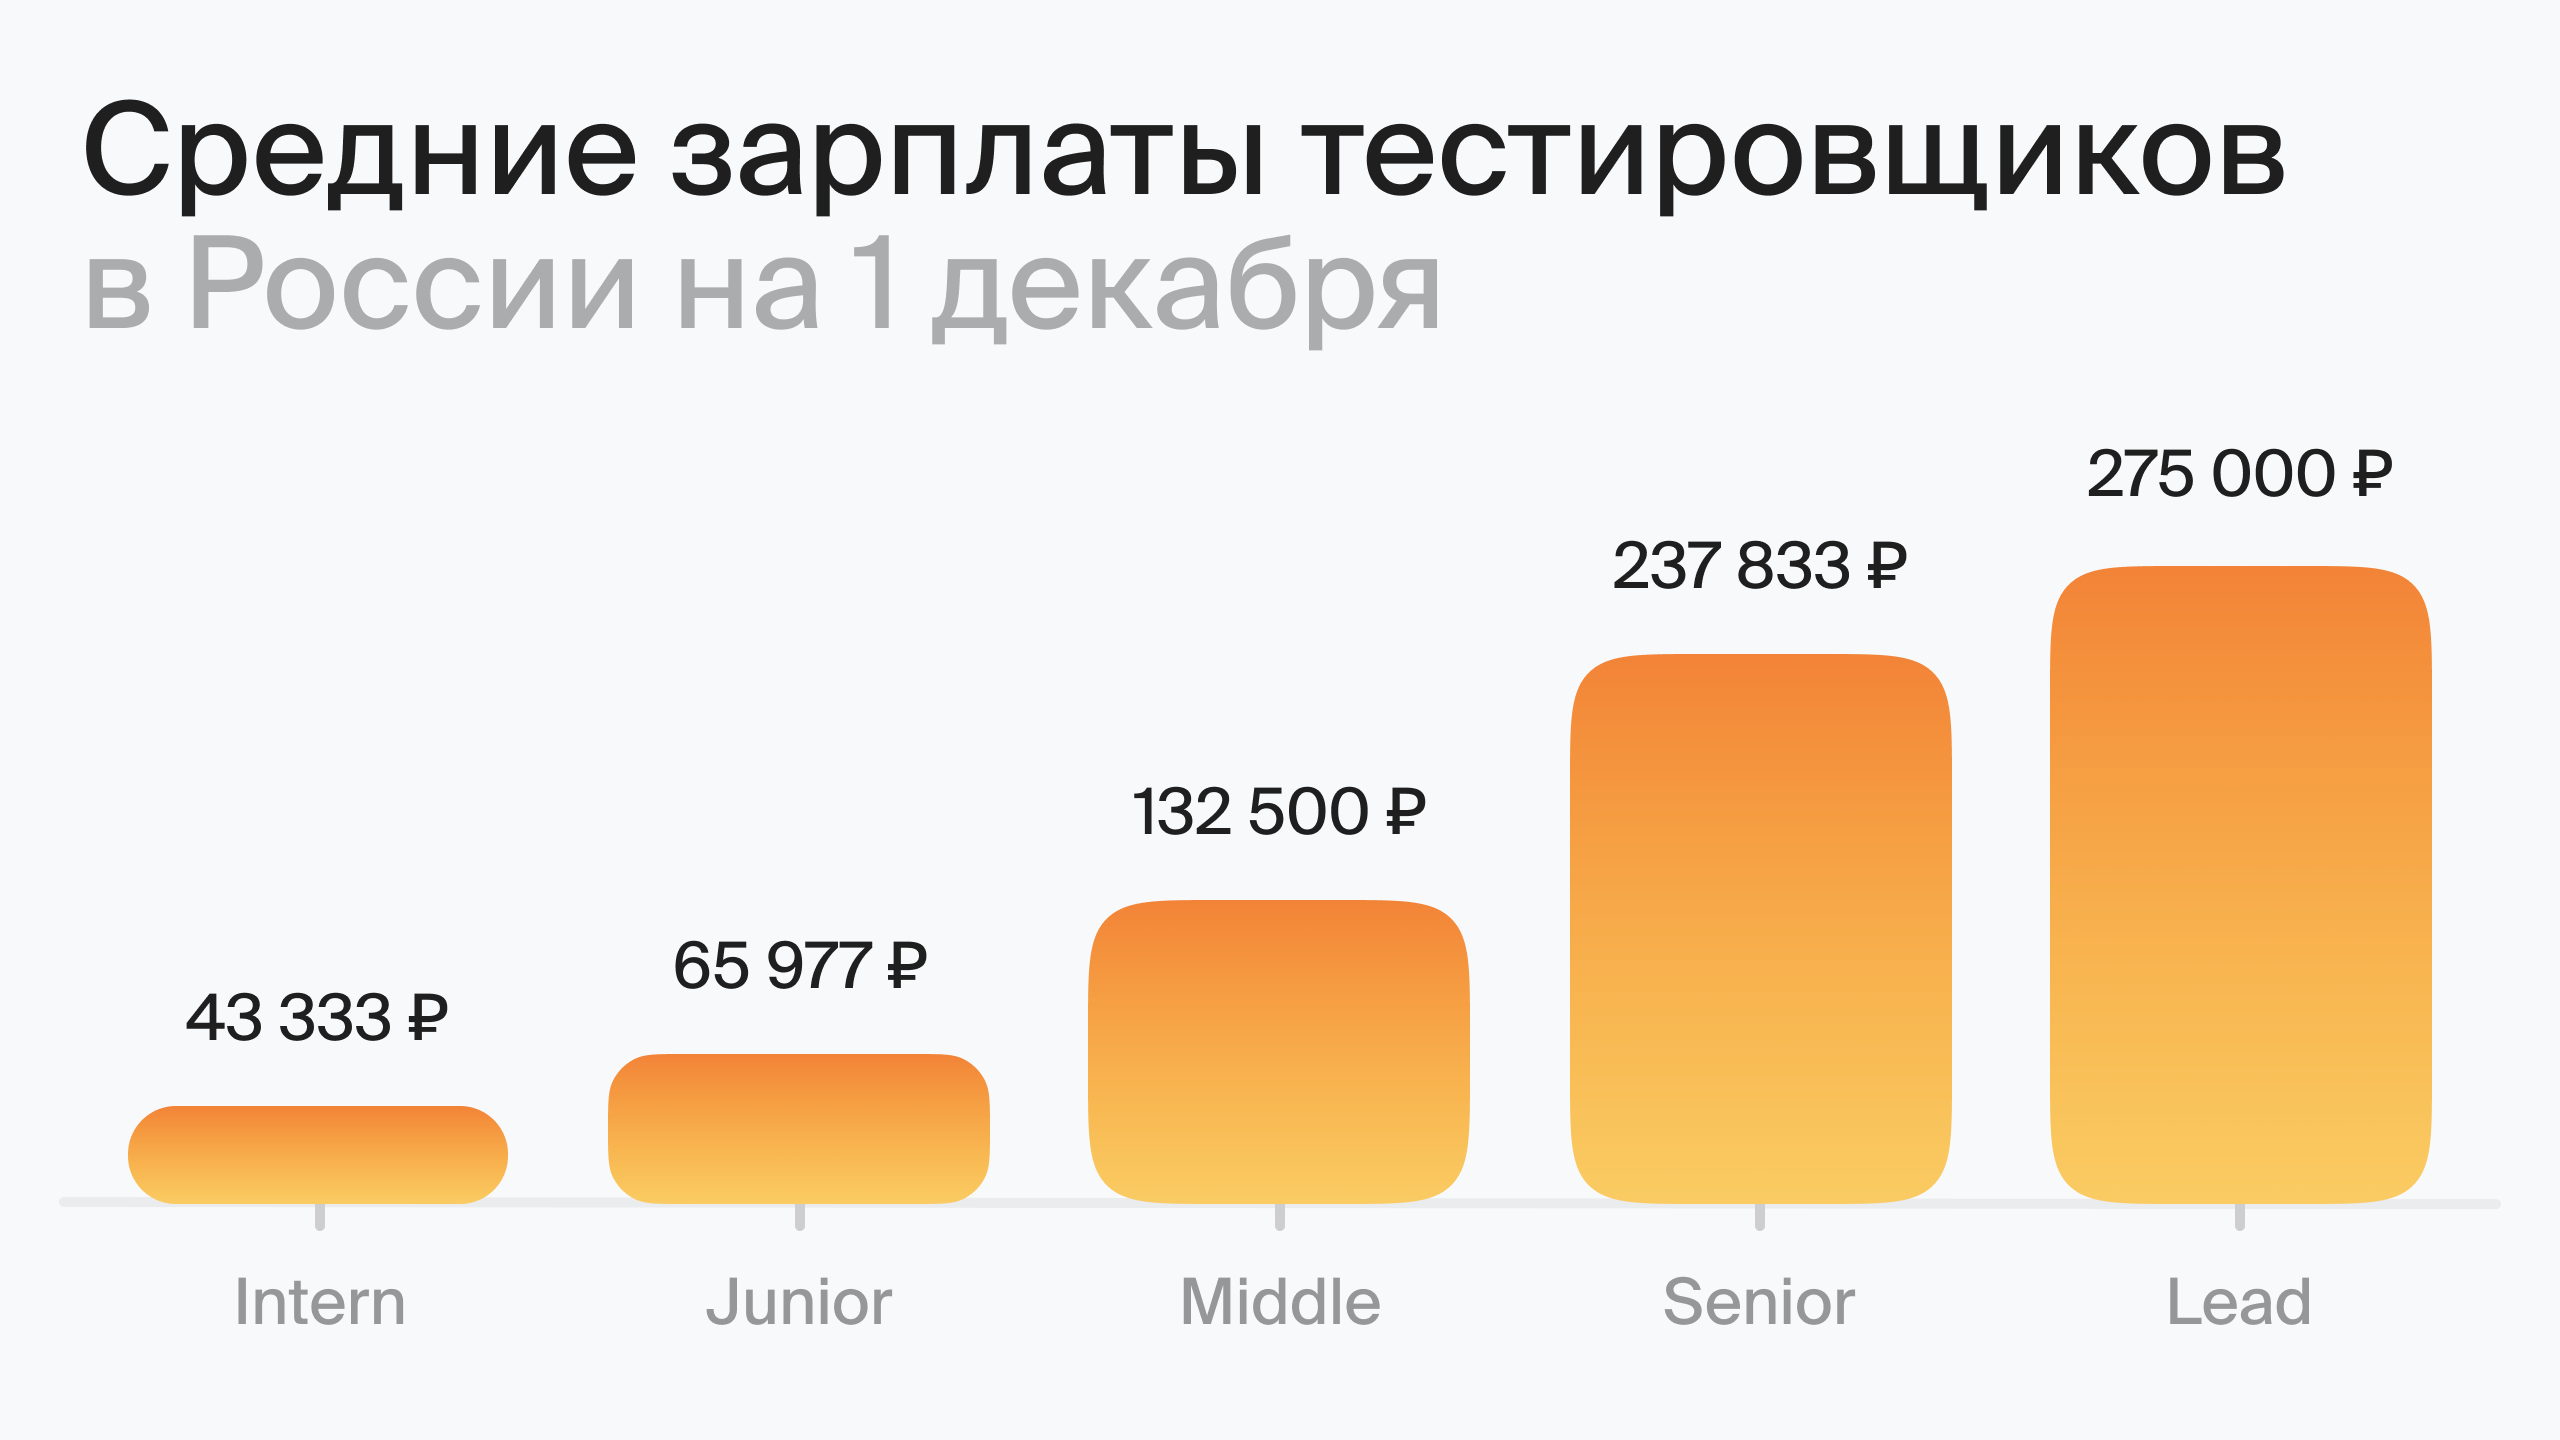 Средний уровень зарплаты в России на 1 декабря (по данным Хабр Карьера)